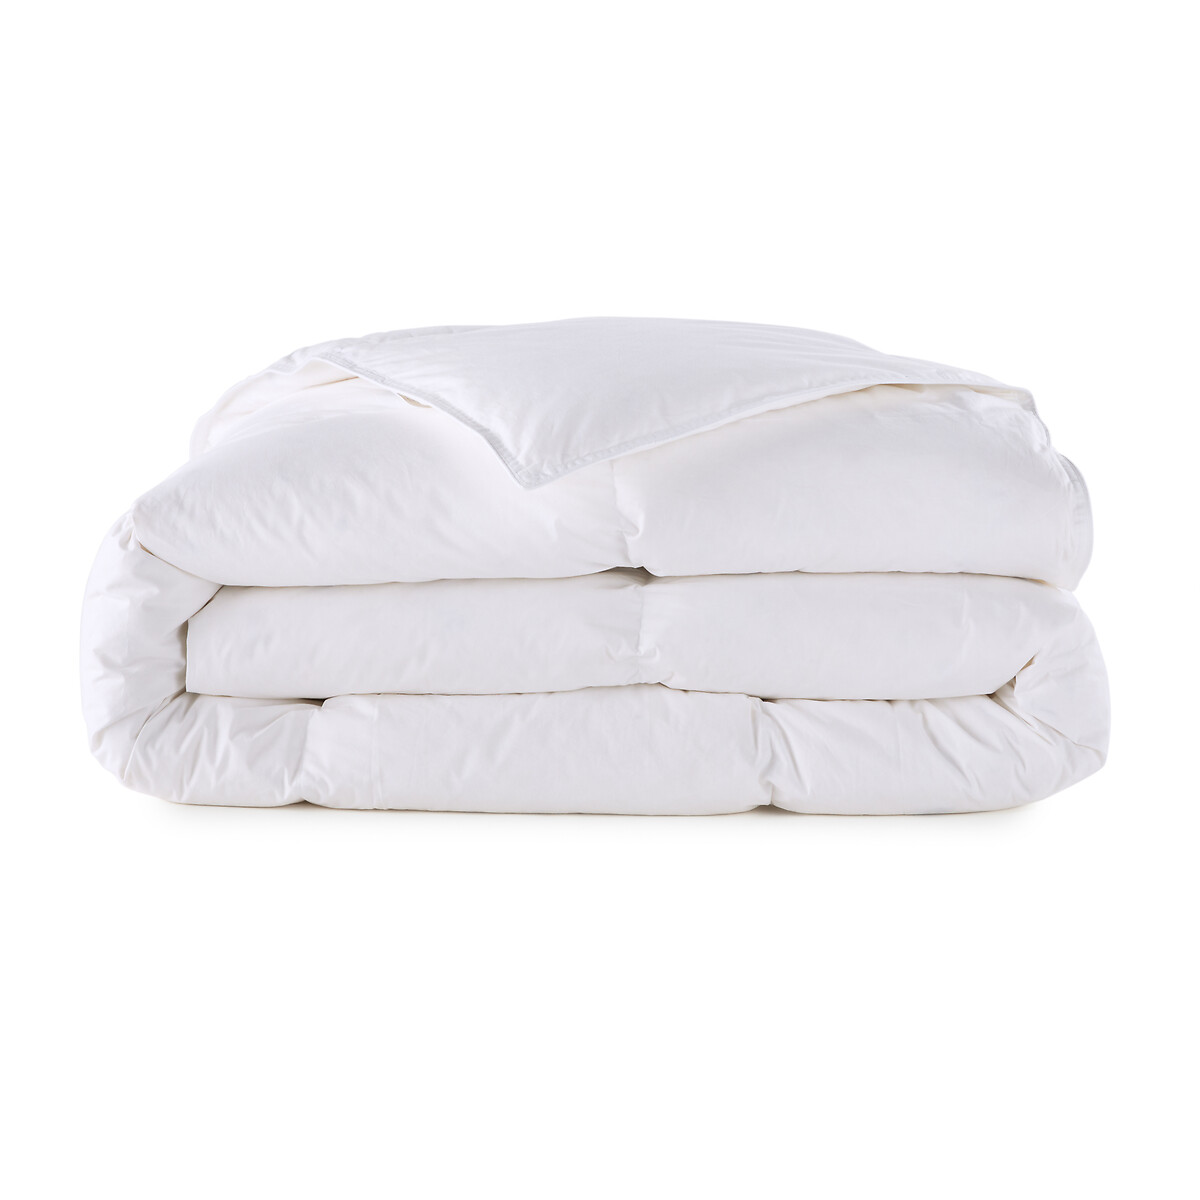 Одеяло La Redoute Натуральное для комфортного сна Прохладное  пуха  перьев 140 x 200 см белый, размер 140 x 200 см - фото 2